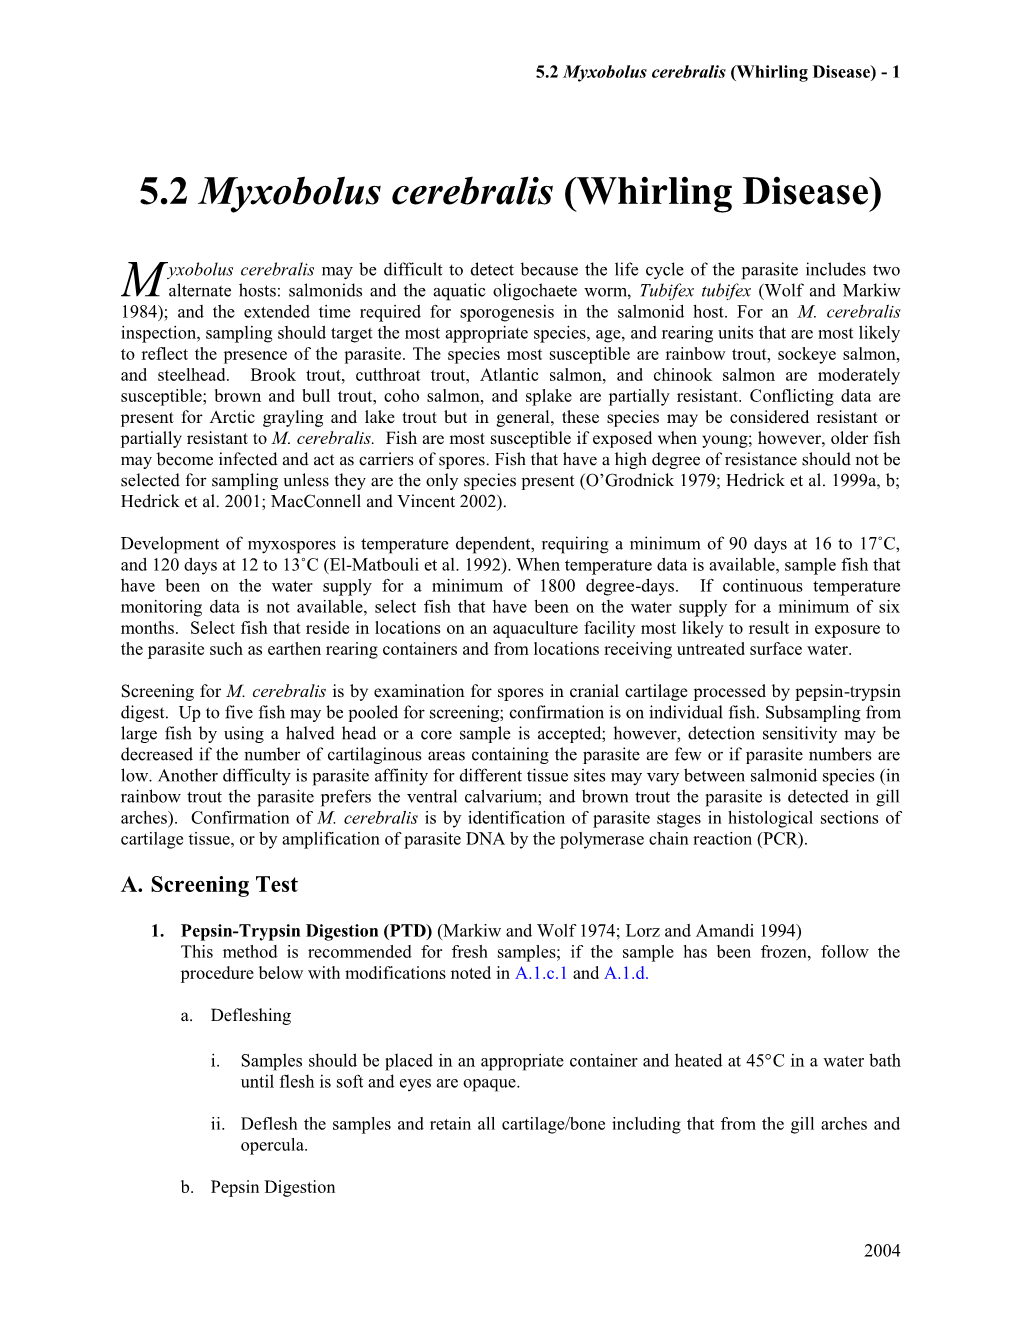 5.2 Myxobolus Cerebralis (Whirling Disease) - 1